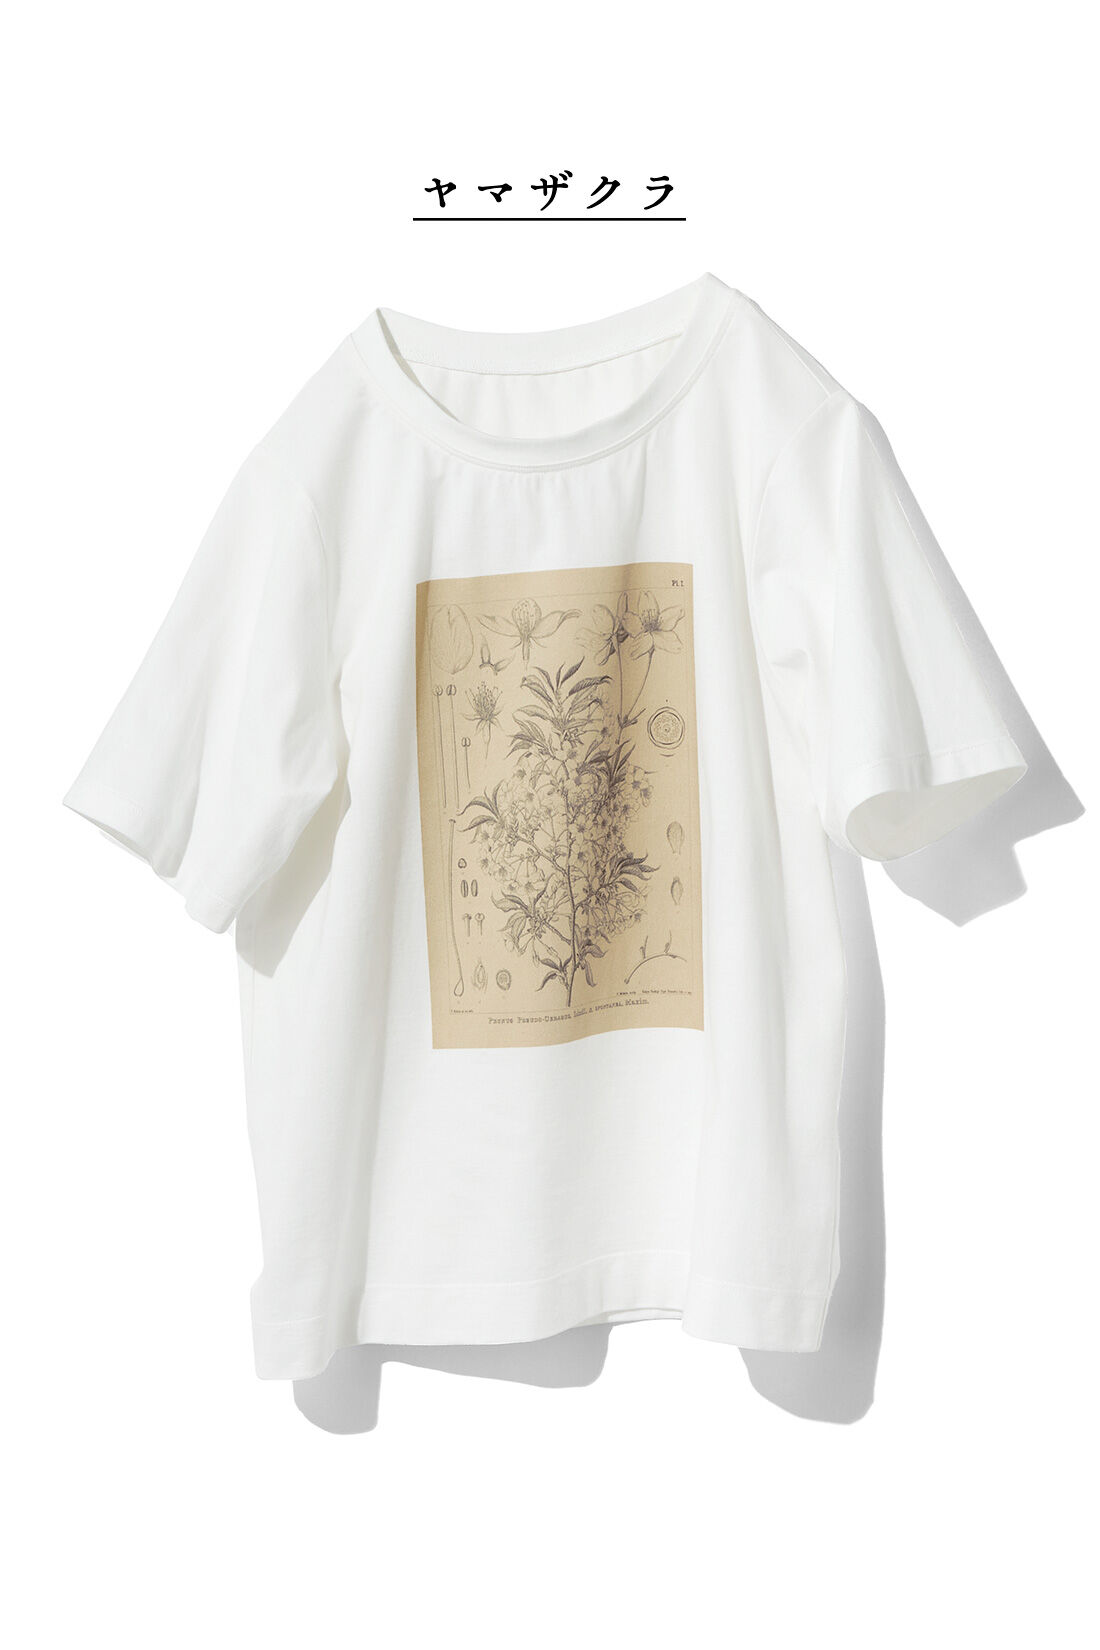 DRECO by IEDIT|【3～10日でお届け】牧野植物園×IEDIT[イディット]　植物図Tシャツ〈ヤマザクラ〉